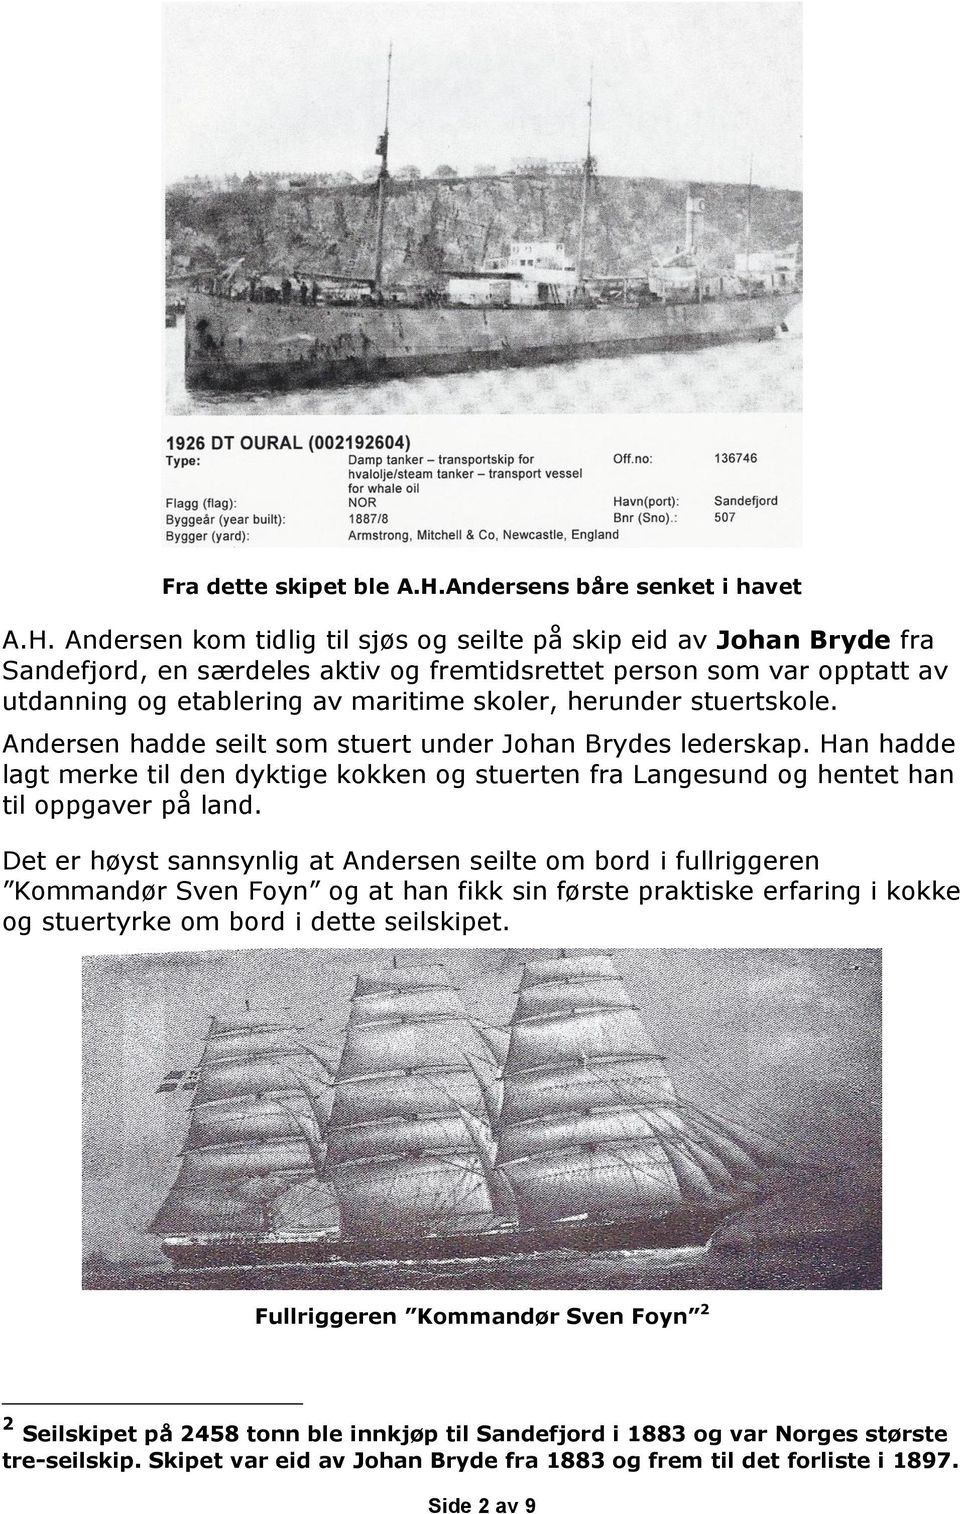 Andersen kom tidlig til sjøs og seilte på skip eid av Johan Bryde fra Sandefjord, en særdeles aktiv og fremtidsrettet person som var opptatt av utdanning og etablering av maritime skoler, herunder